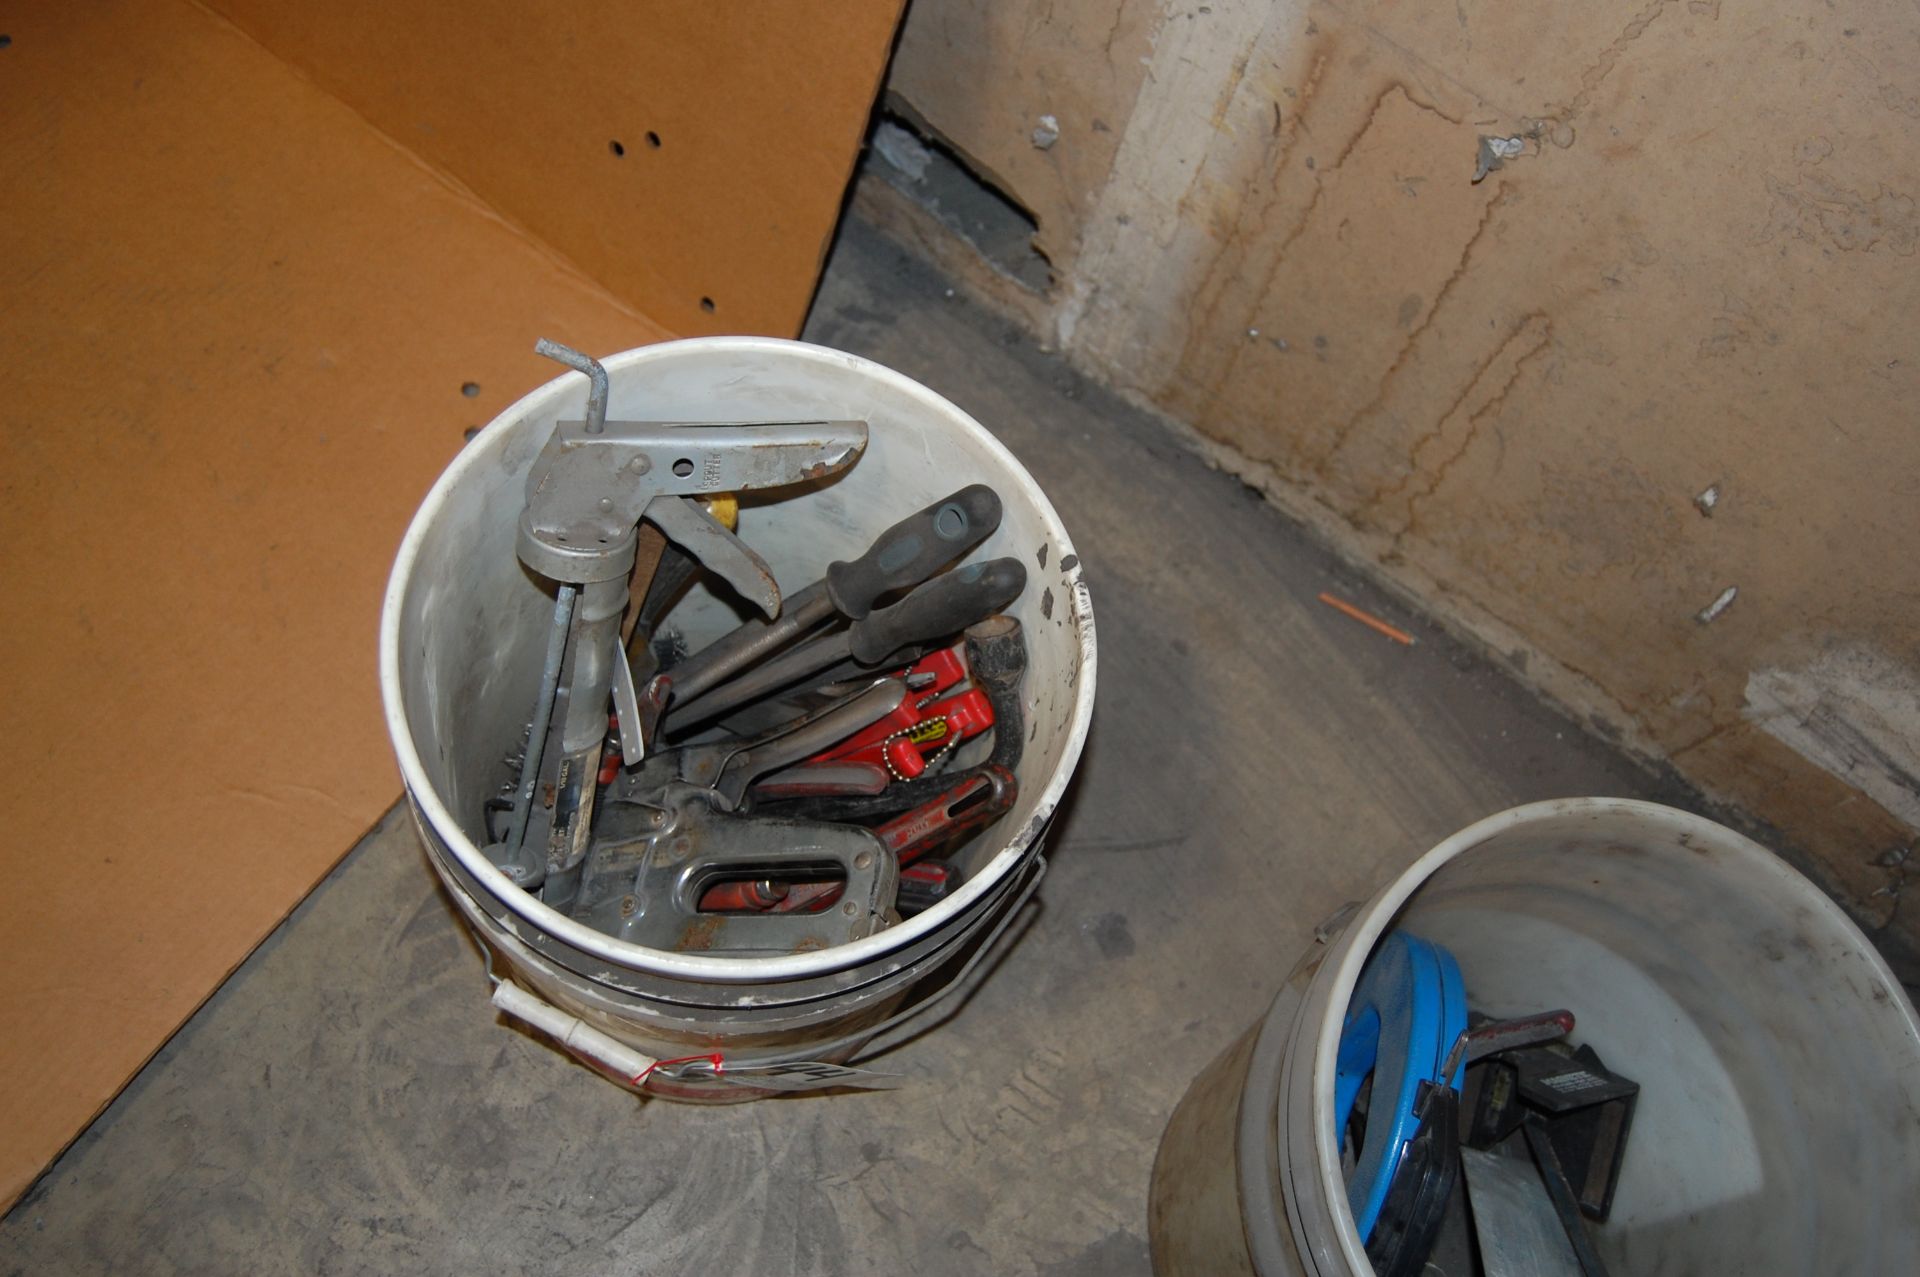 Bucket of assorted hand tools